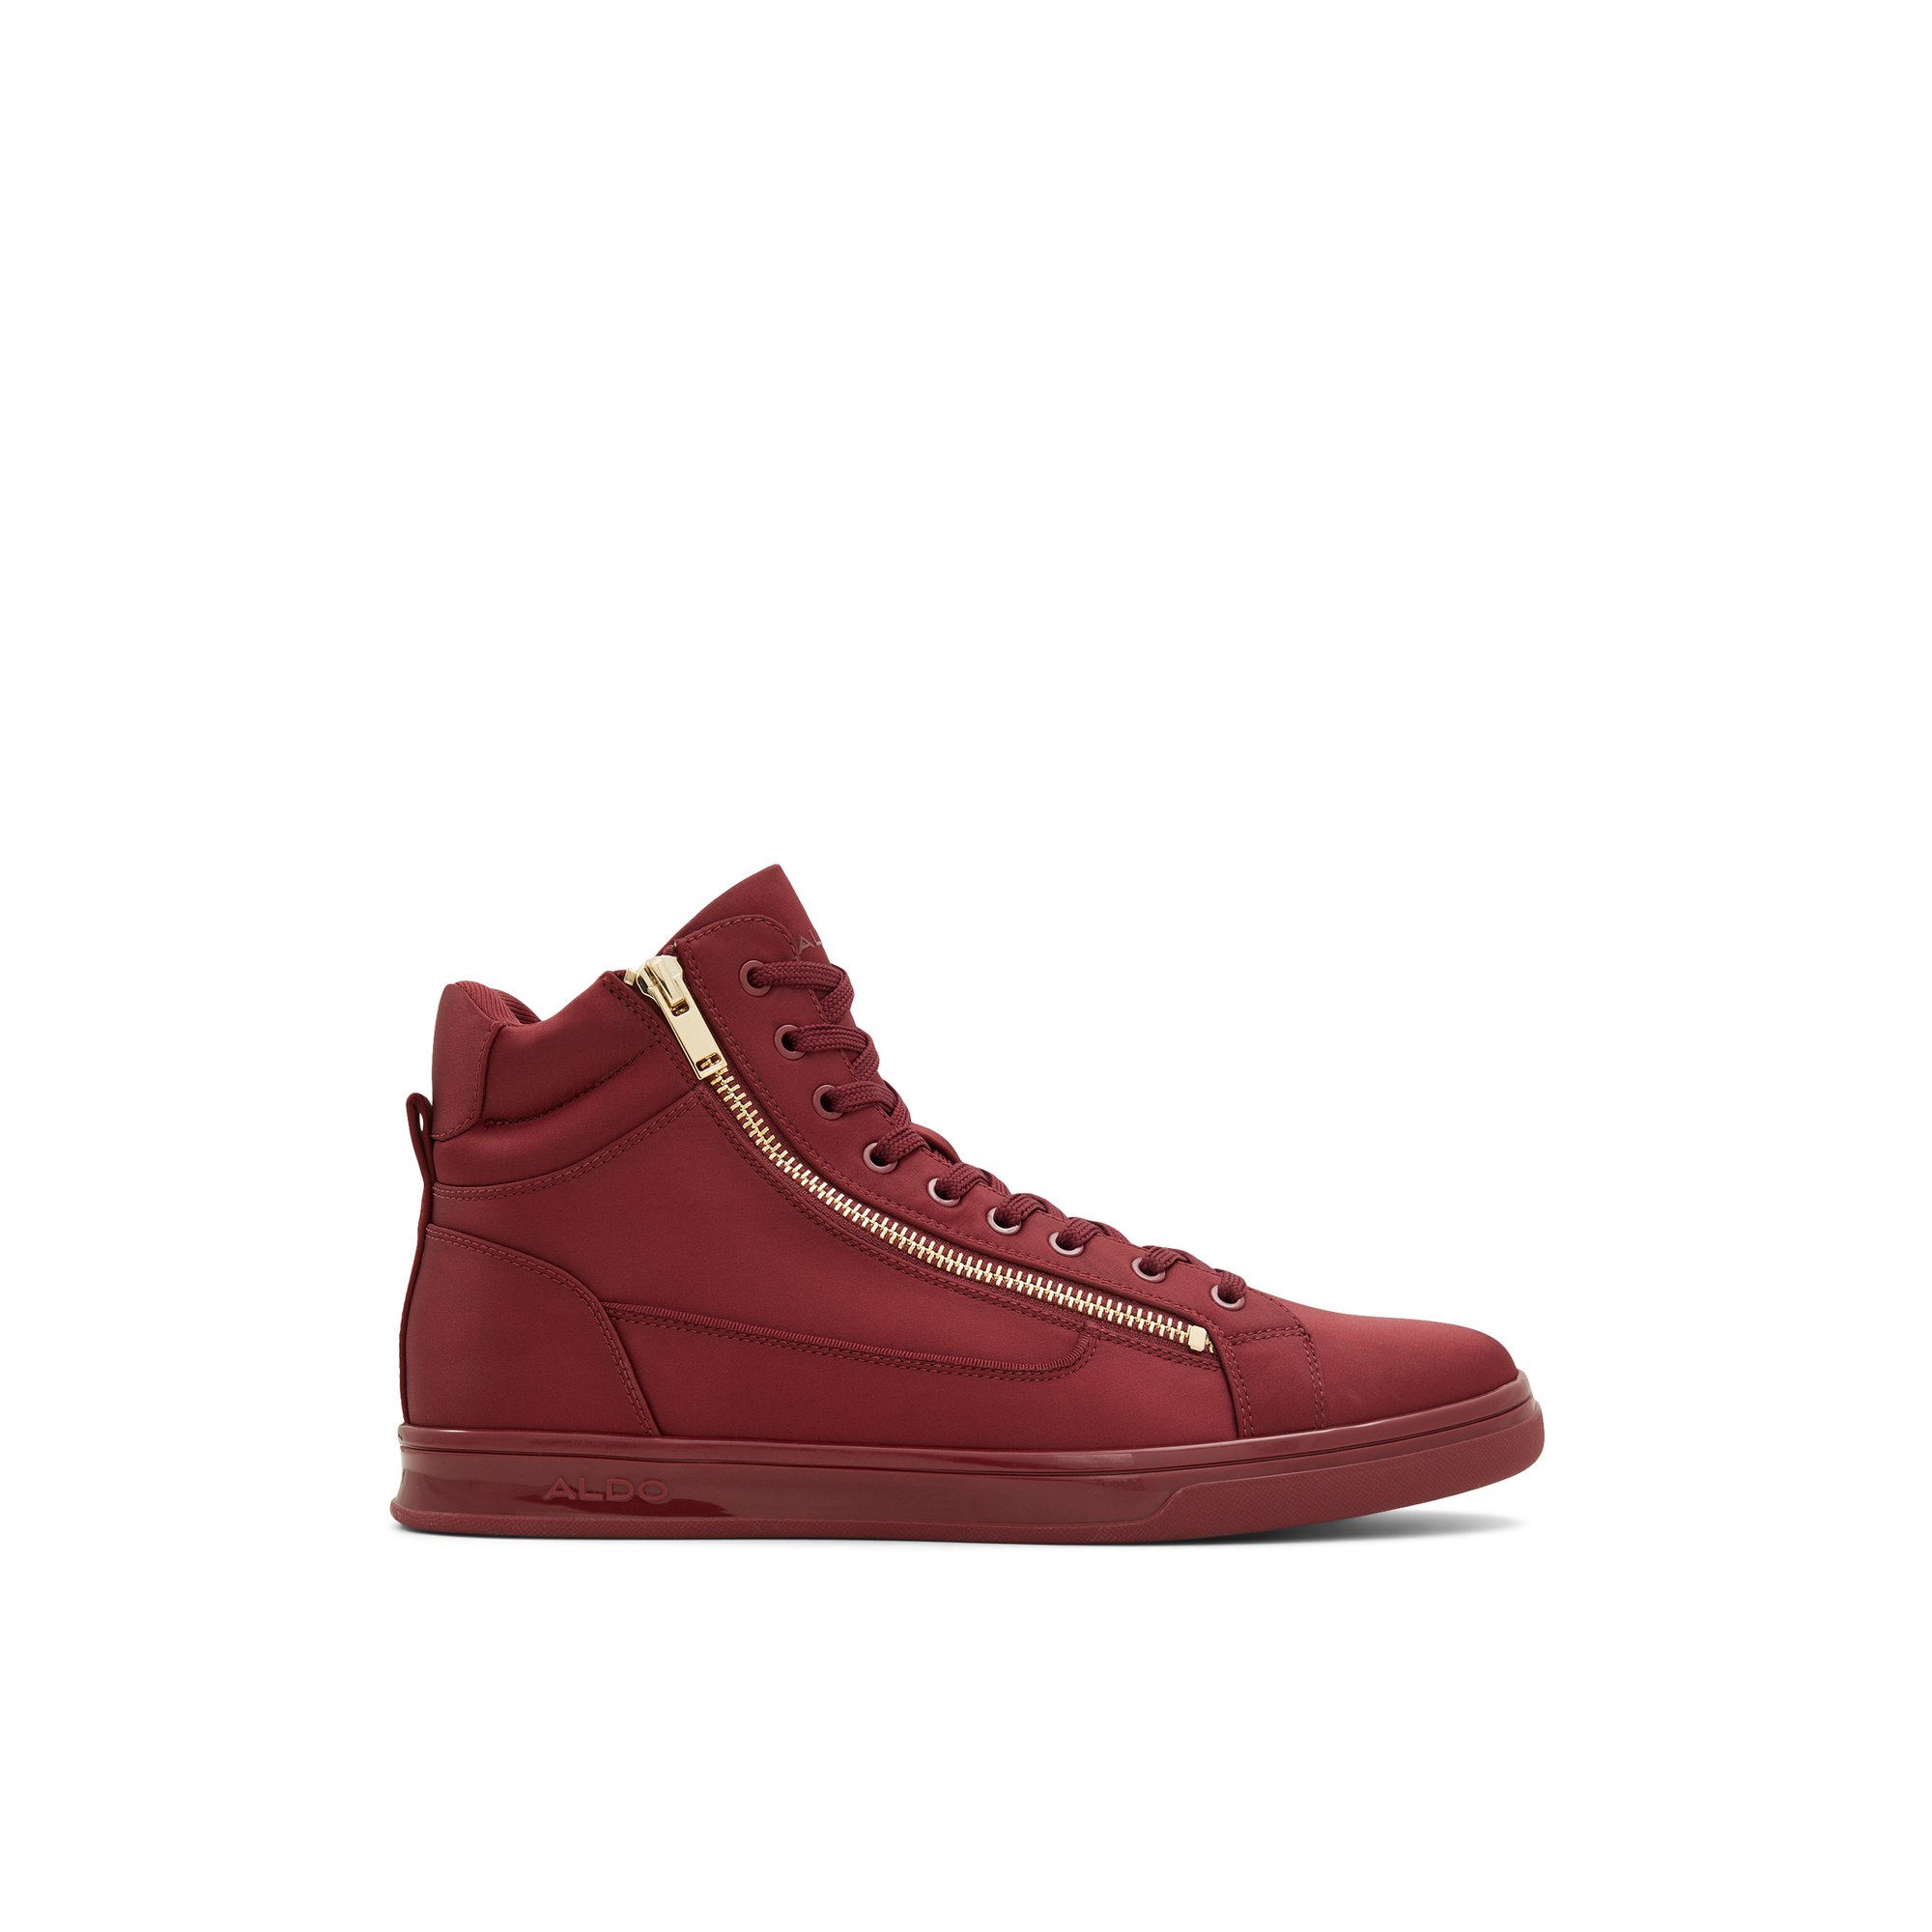 ALDO Antonio - Men's High Top Sneakers - Red